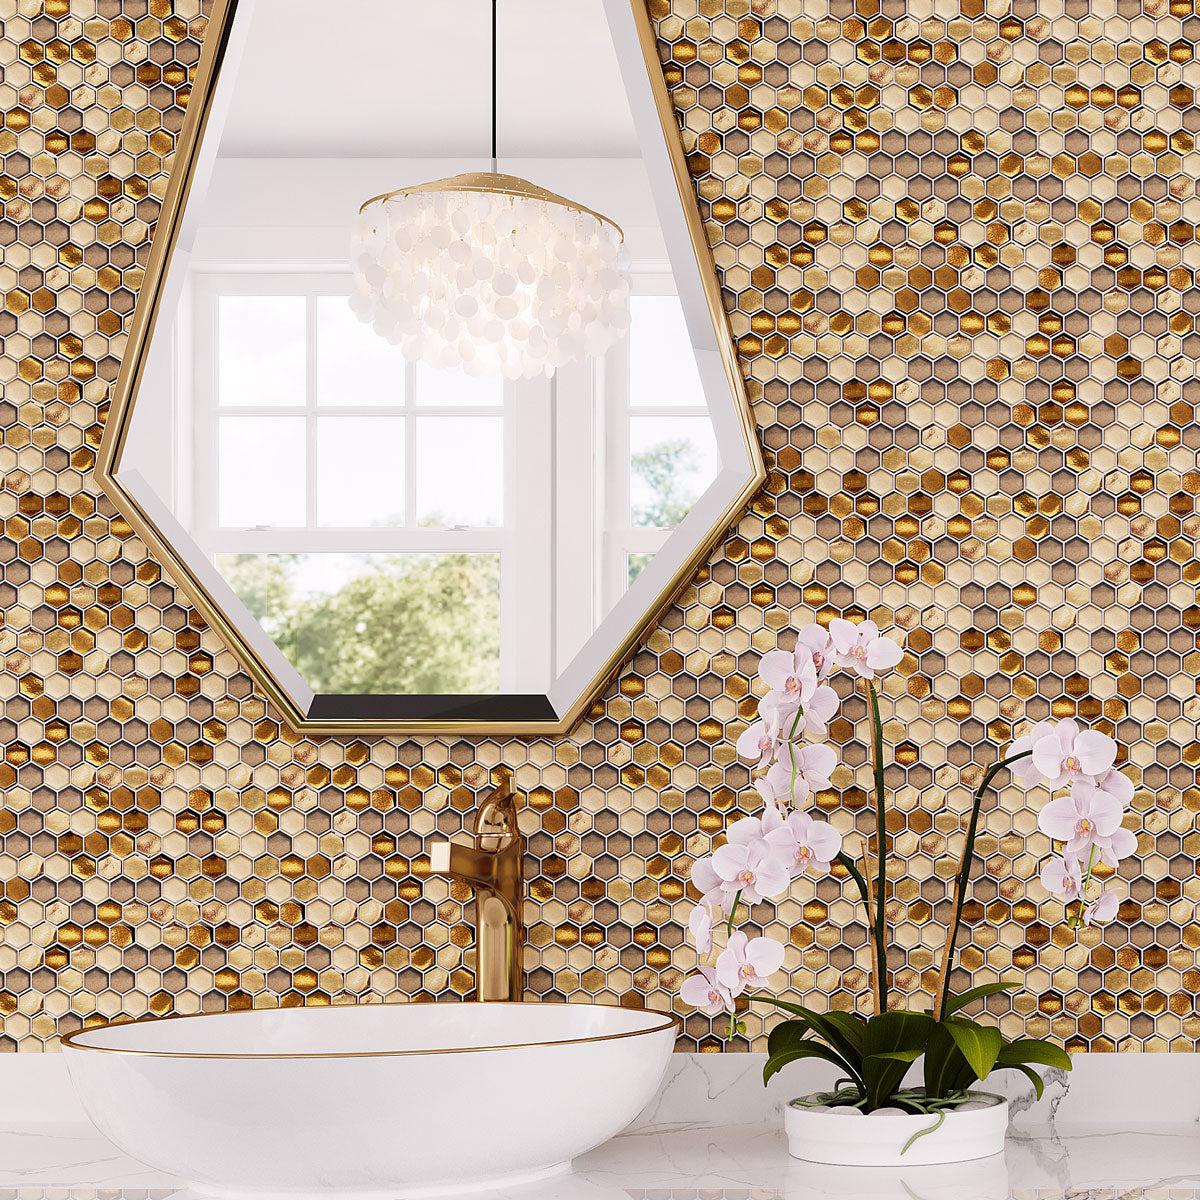 Golden Honey Hexagon Glass Mosaic Tile bathroom wall with brass fixtures